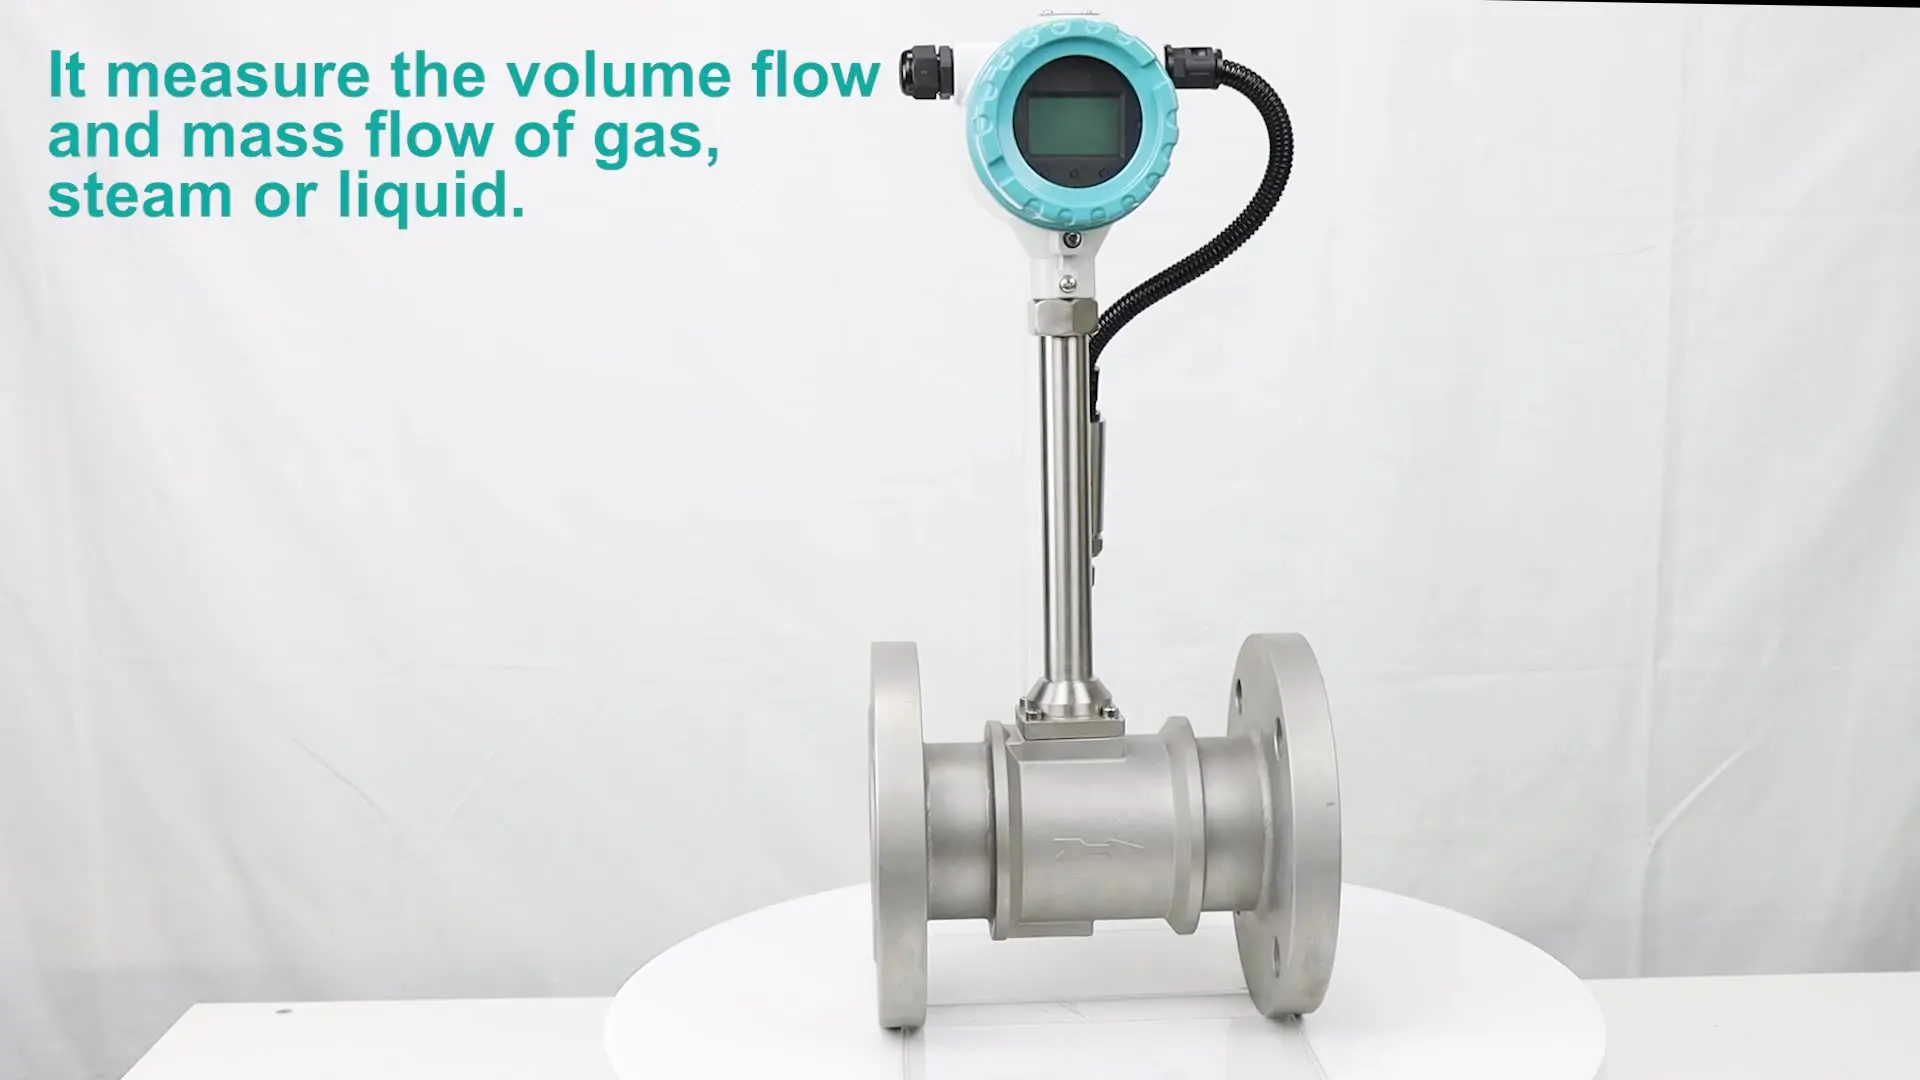 

RS485 compressed air gas co2 flow meter Carbon dioxide nitrogen argon vortex flow meter for boiler steam vortex flowmeter price